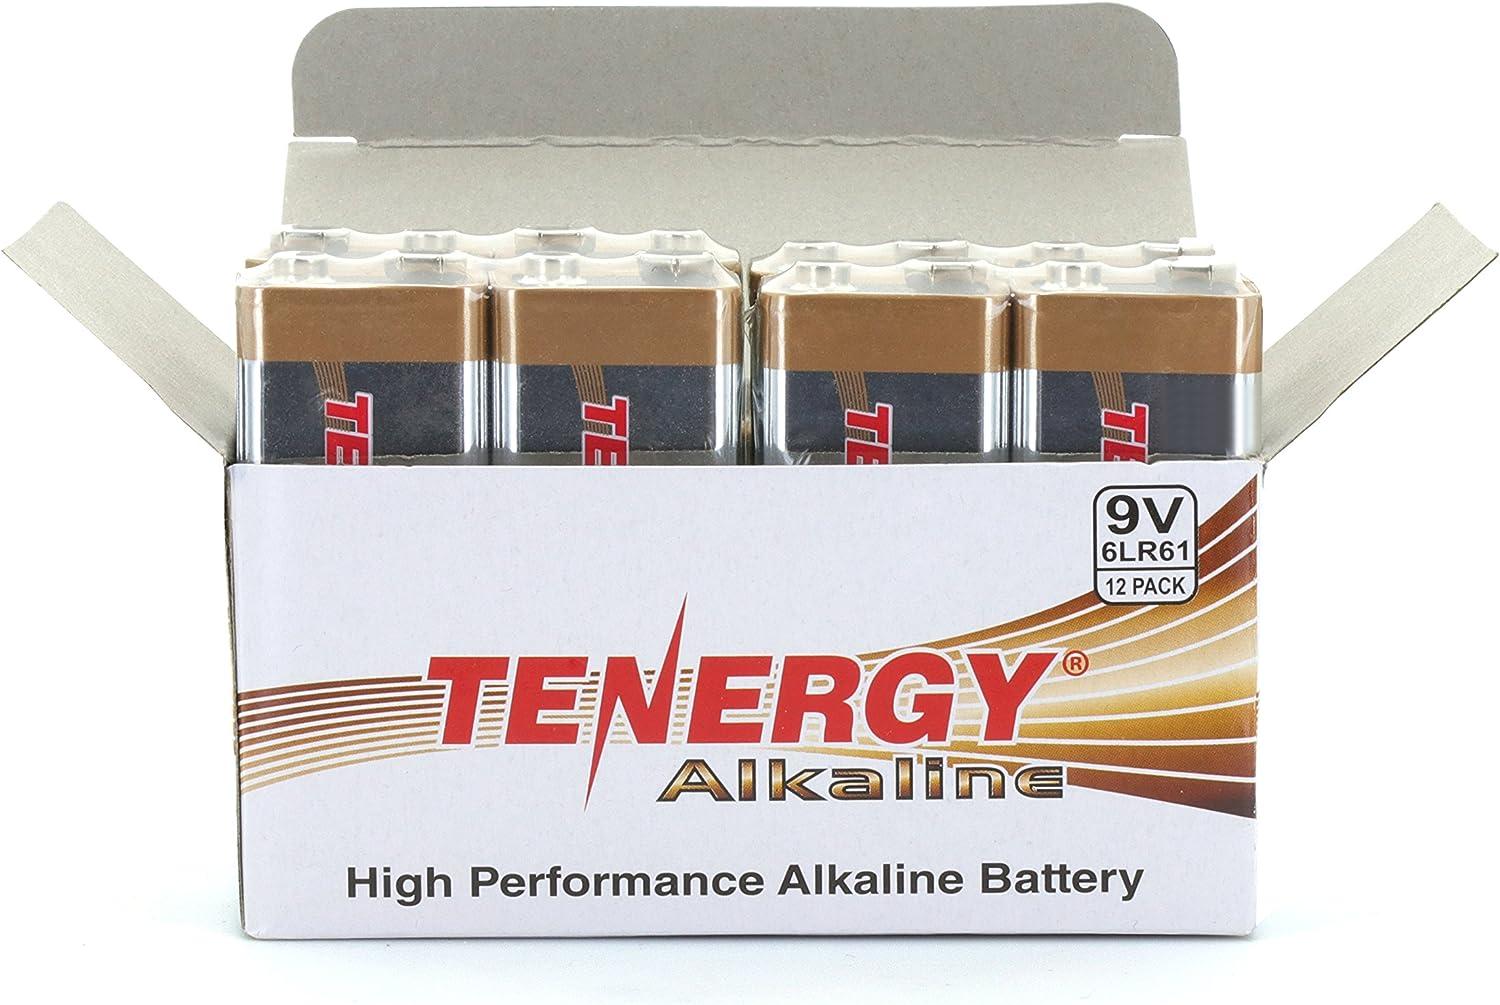 Tenergy 6LR61 9V Alkaline Battery, Non-Rechargeable Battery for